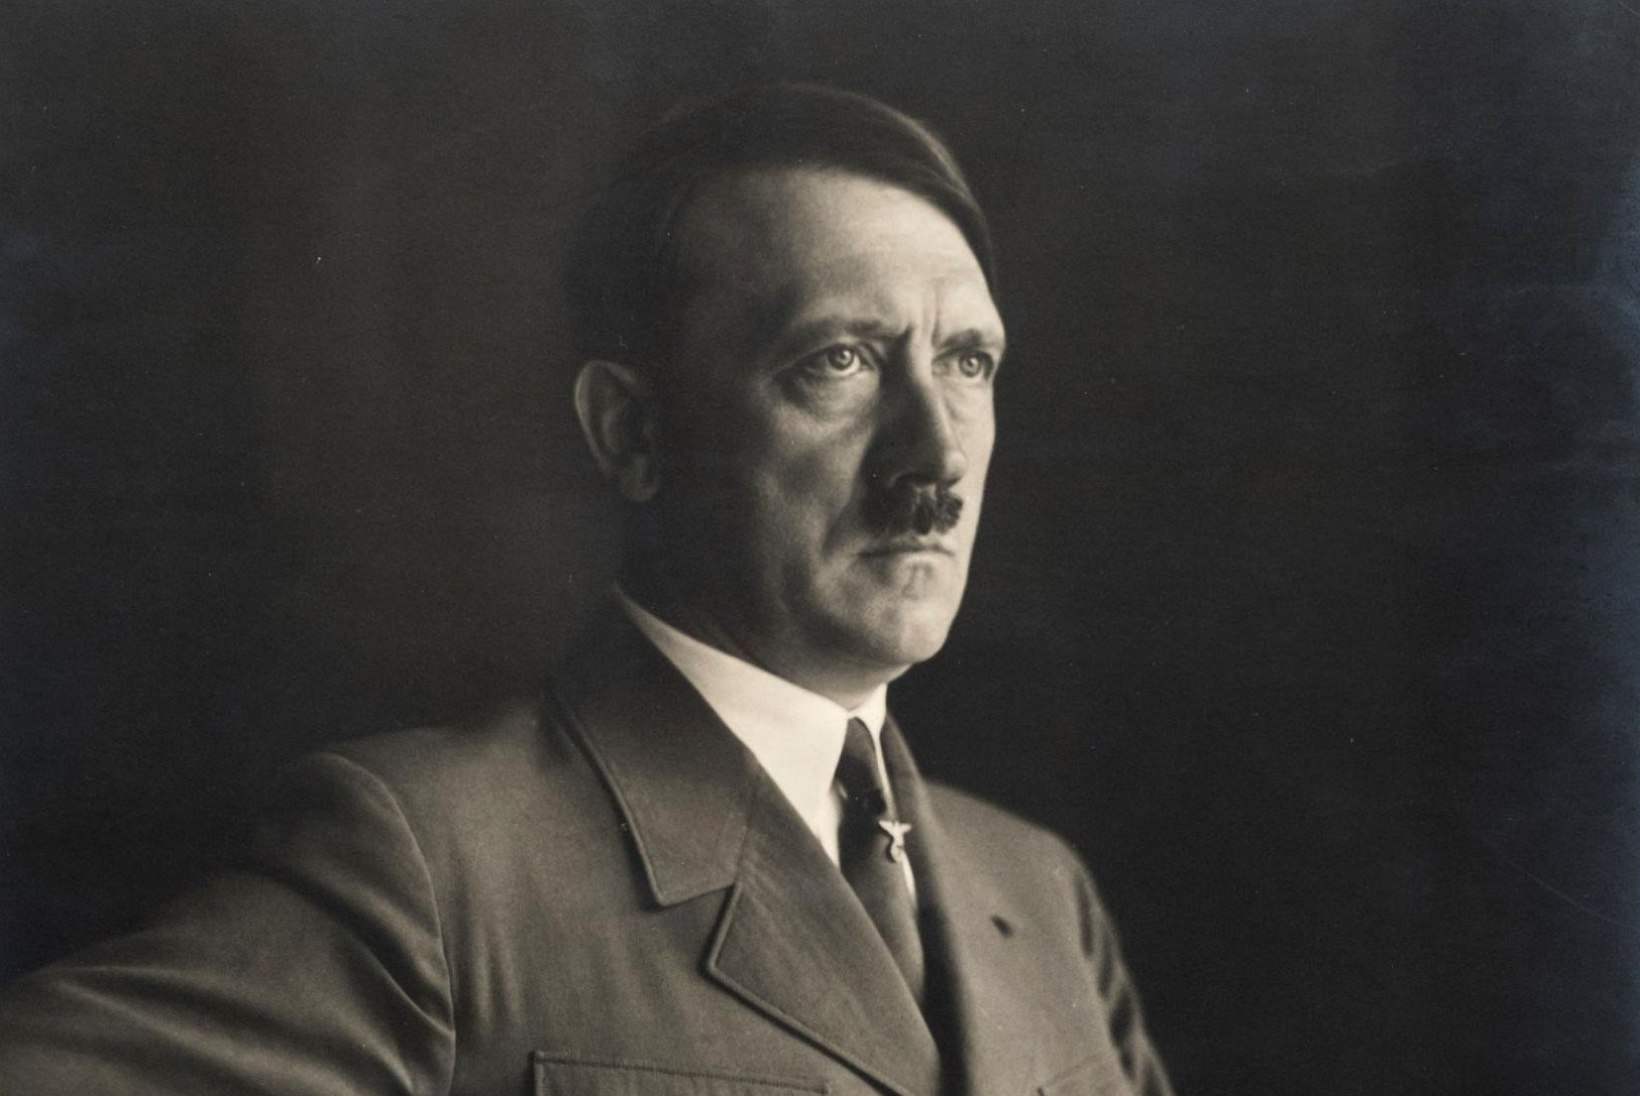 Adolf Hitleri teisik: veidrad palved ja töö, mida ta kunagi vastu ei võtaks